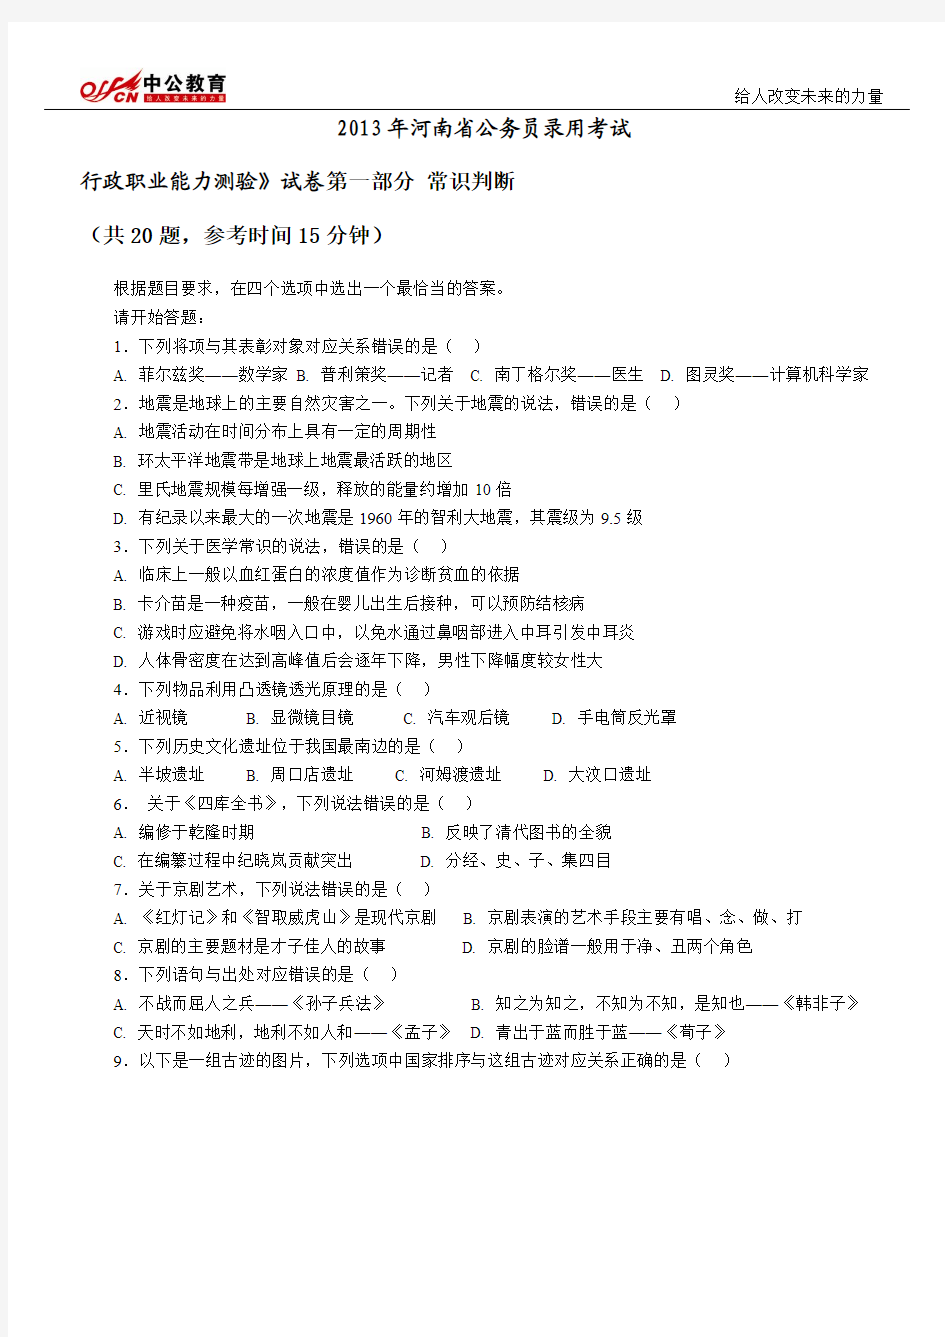 2013年河南省公务员考试行测真题及答案解析